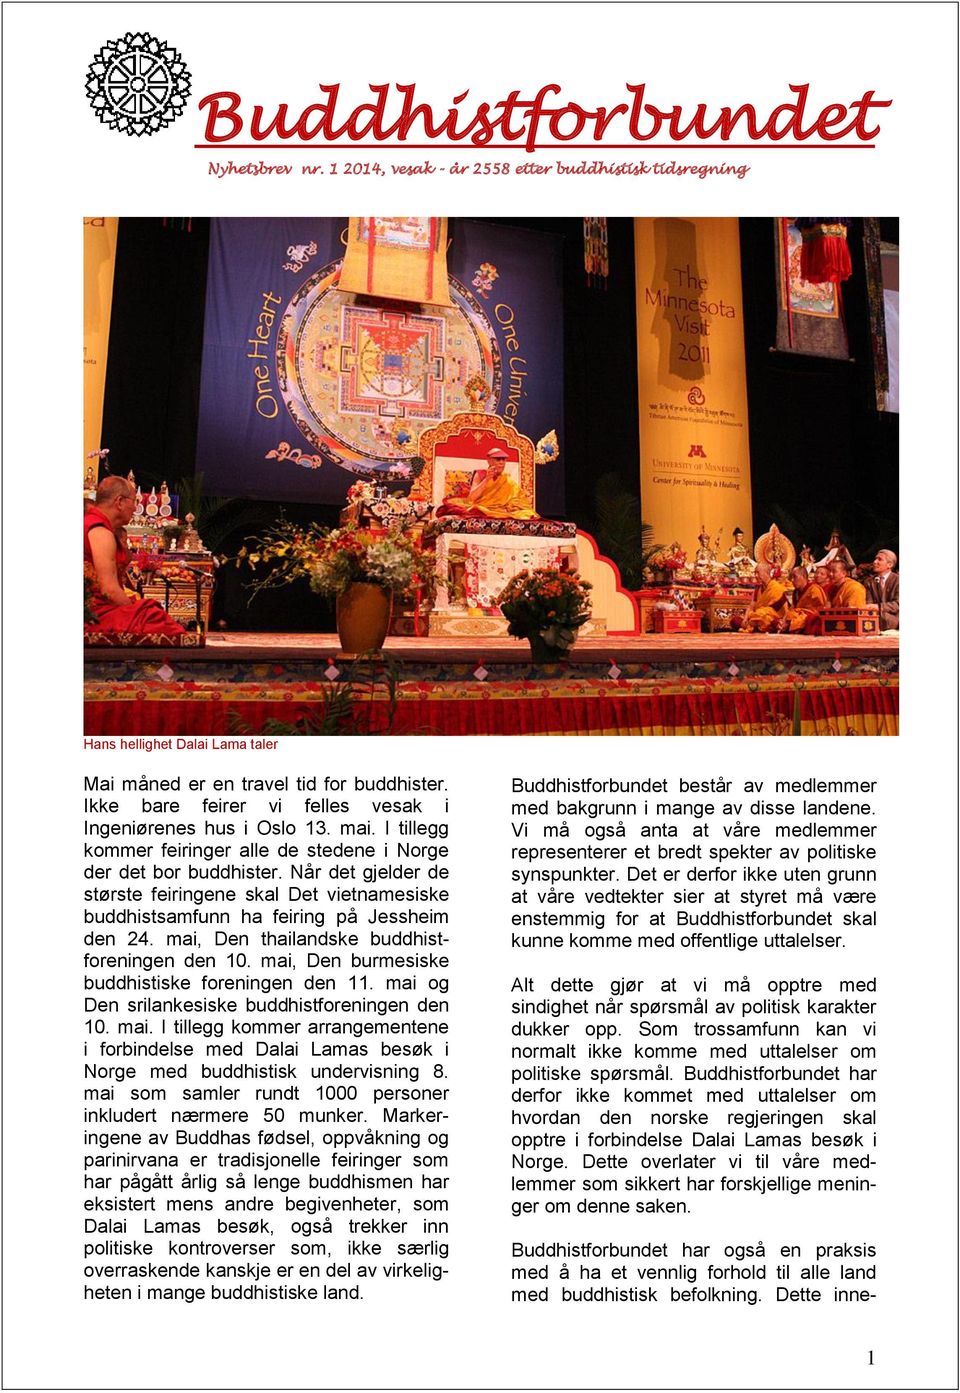 Når det gjelder de største feiringene skal Det vietnamesiske buddhistsamfunn ha feiring på Jessheim den 24. mai, Den thailandske buddhistforeningen den 10.